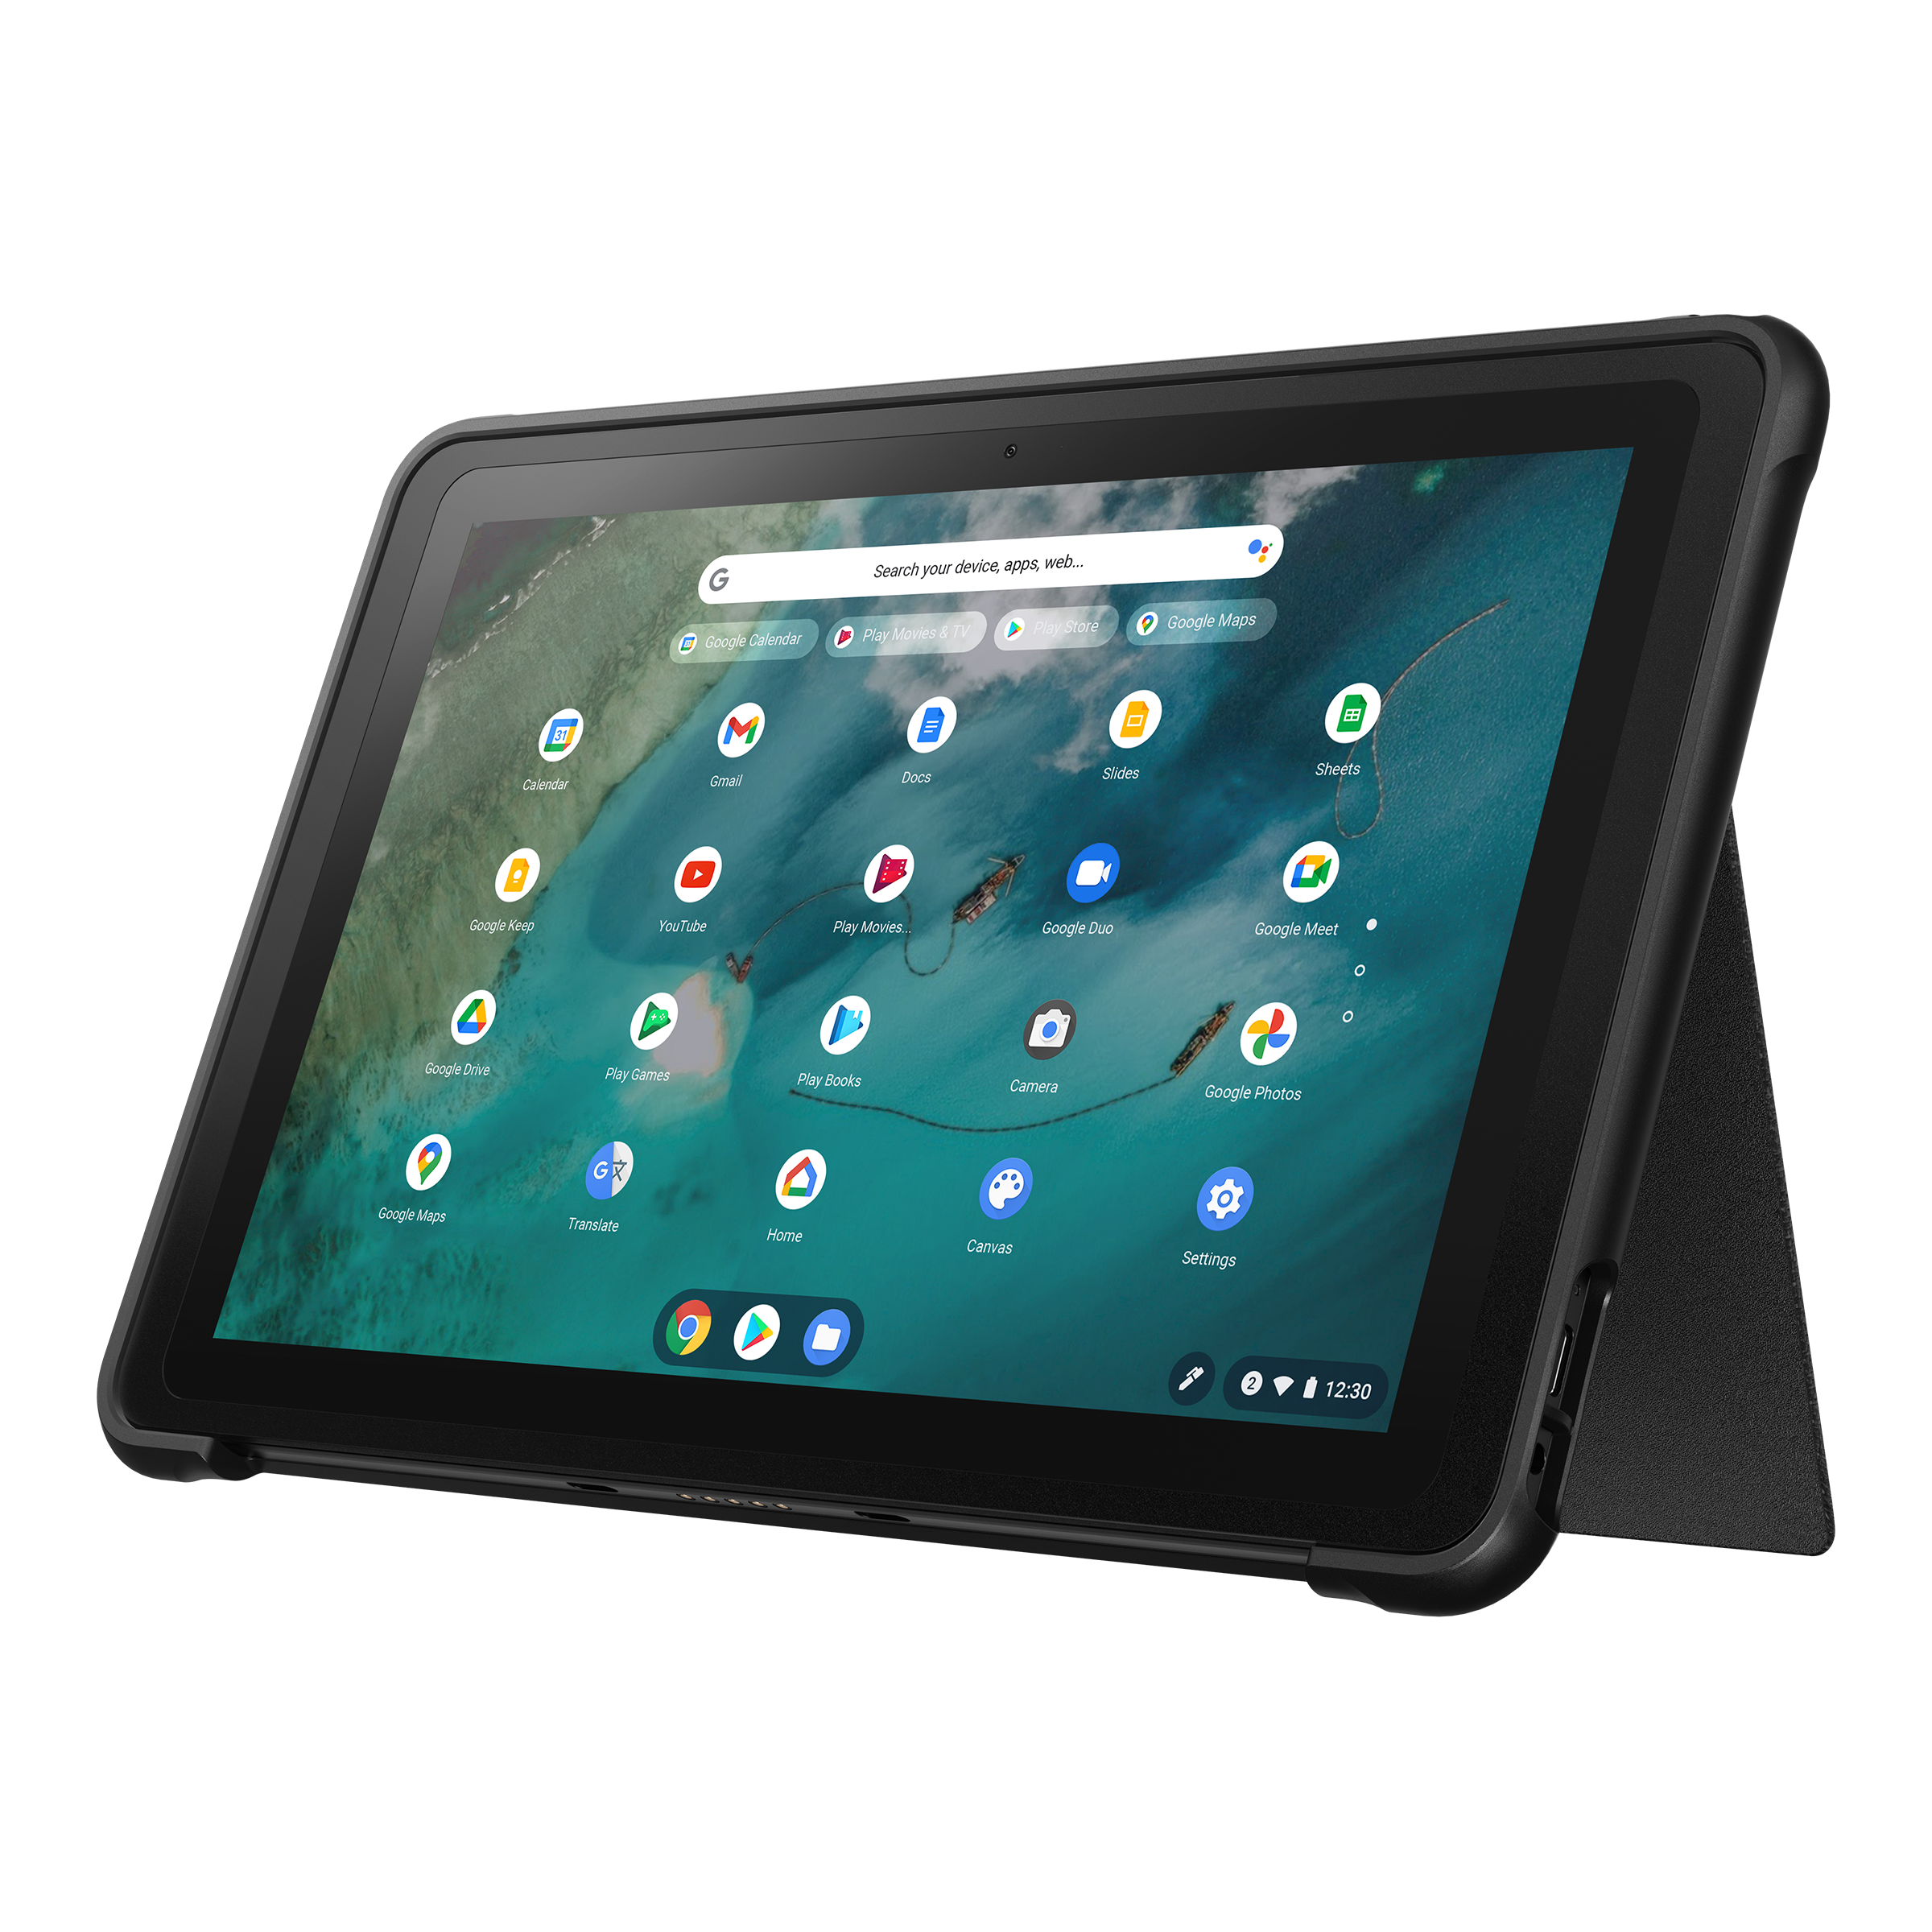 ASUS Chromebook Detachable CZ1 (CZ1000)｜Laptops For Students 